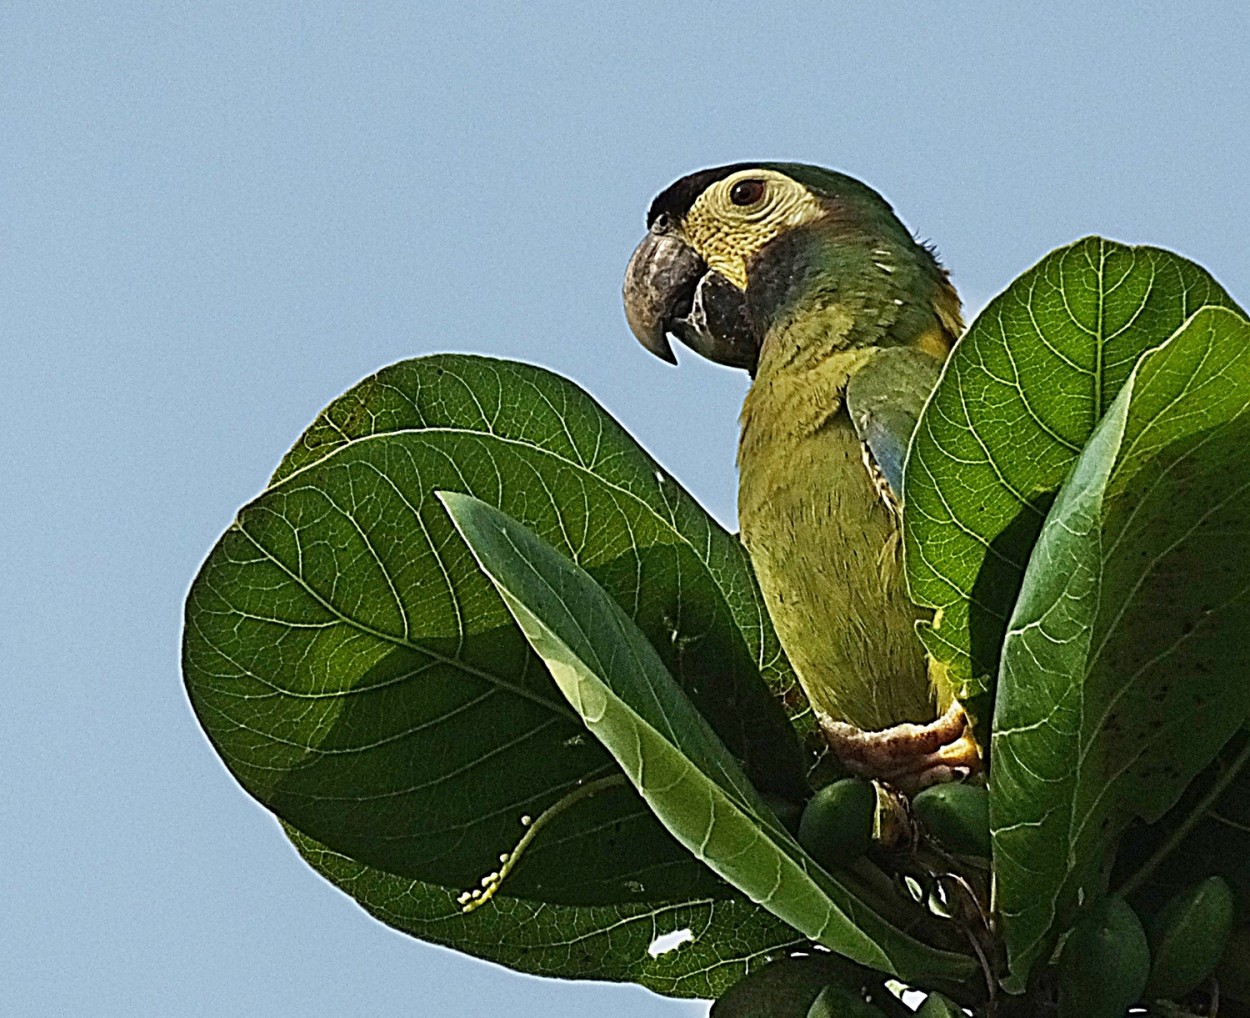 "Maracan-de-colar um periquito do pantanal M.S." de Decio Badari